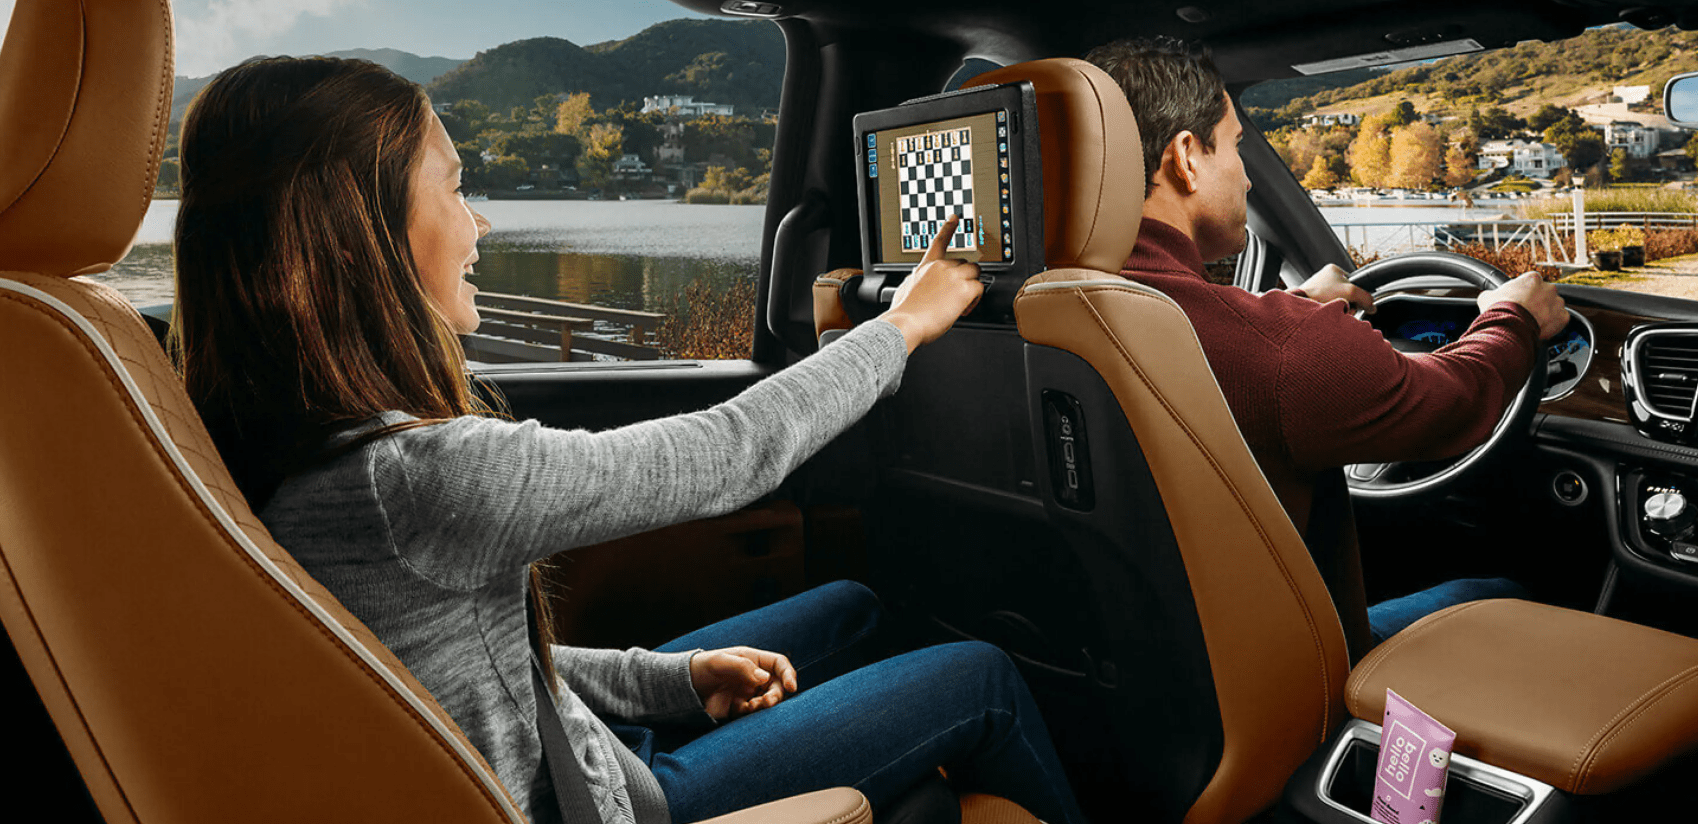 2022 Chrysler Pacifica теперь предлагает Amazon Fire TV для кинотеатра на заднем сиденье